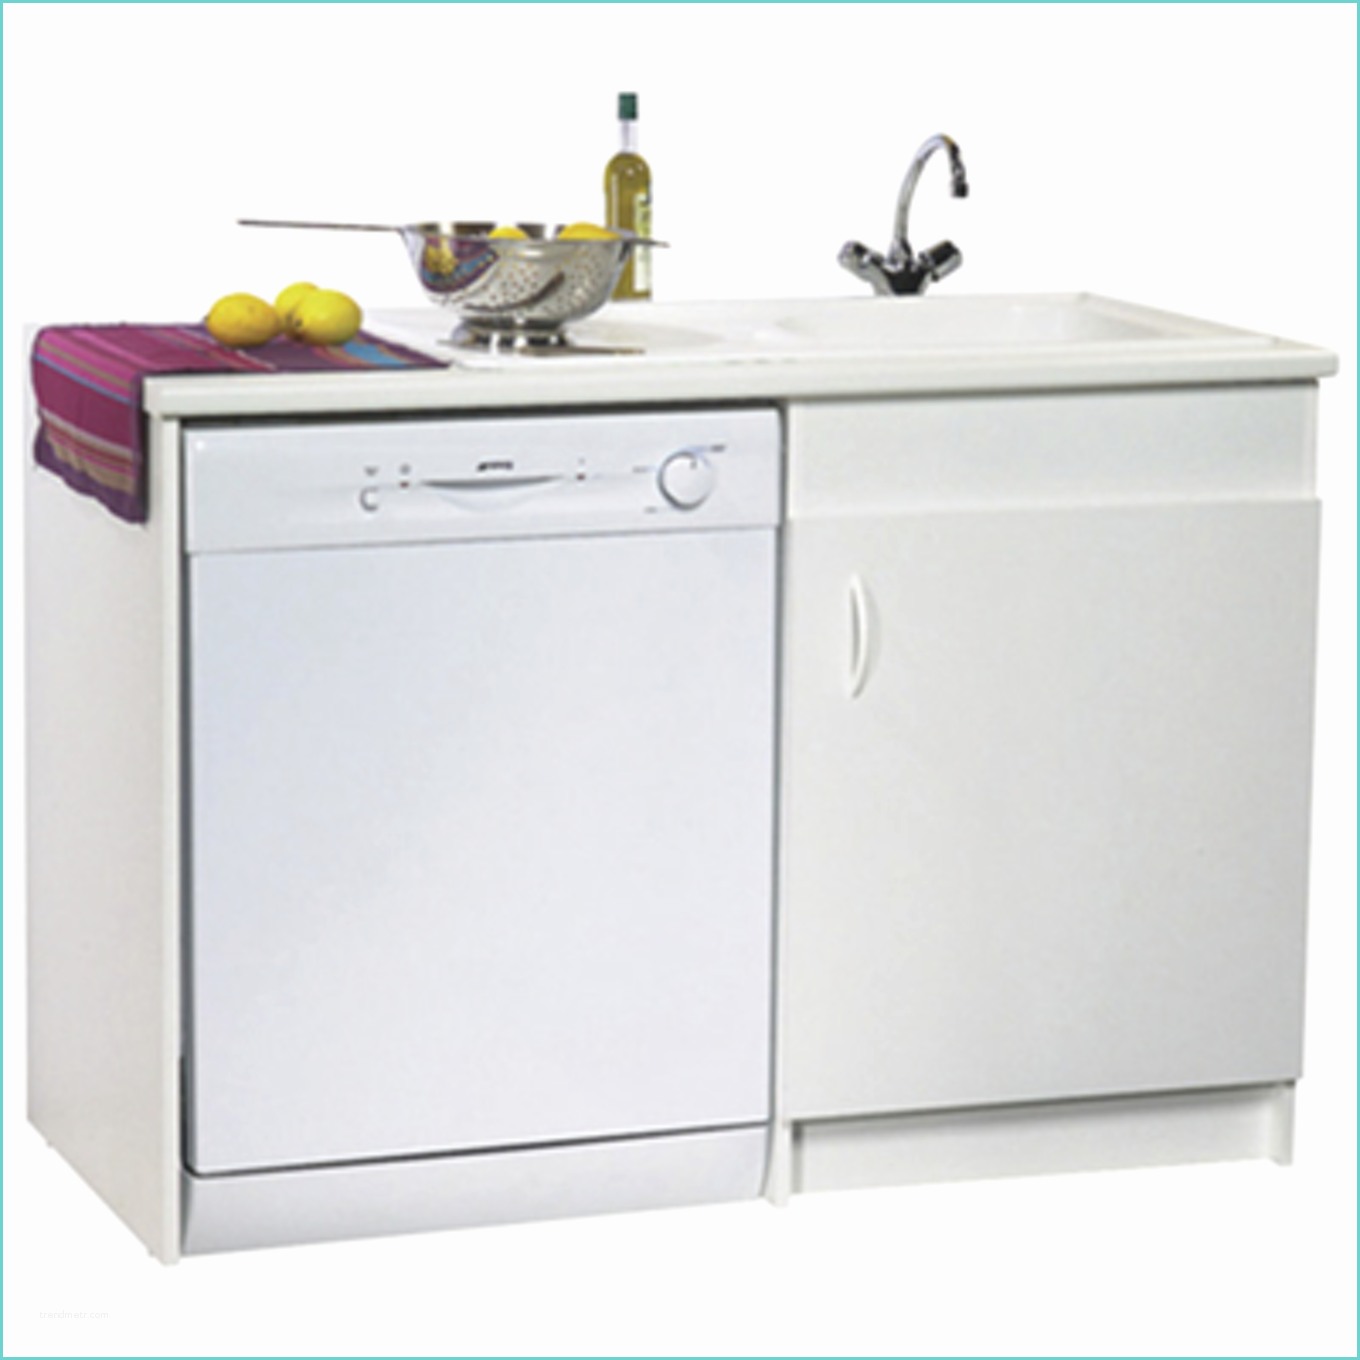 Machine A Laver La Vaisselle Encastrable Miele Ikea Lave Linge Encastrable Meuble Lave Vaisselle